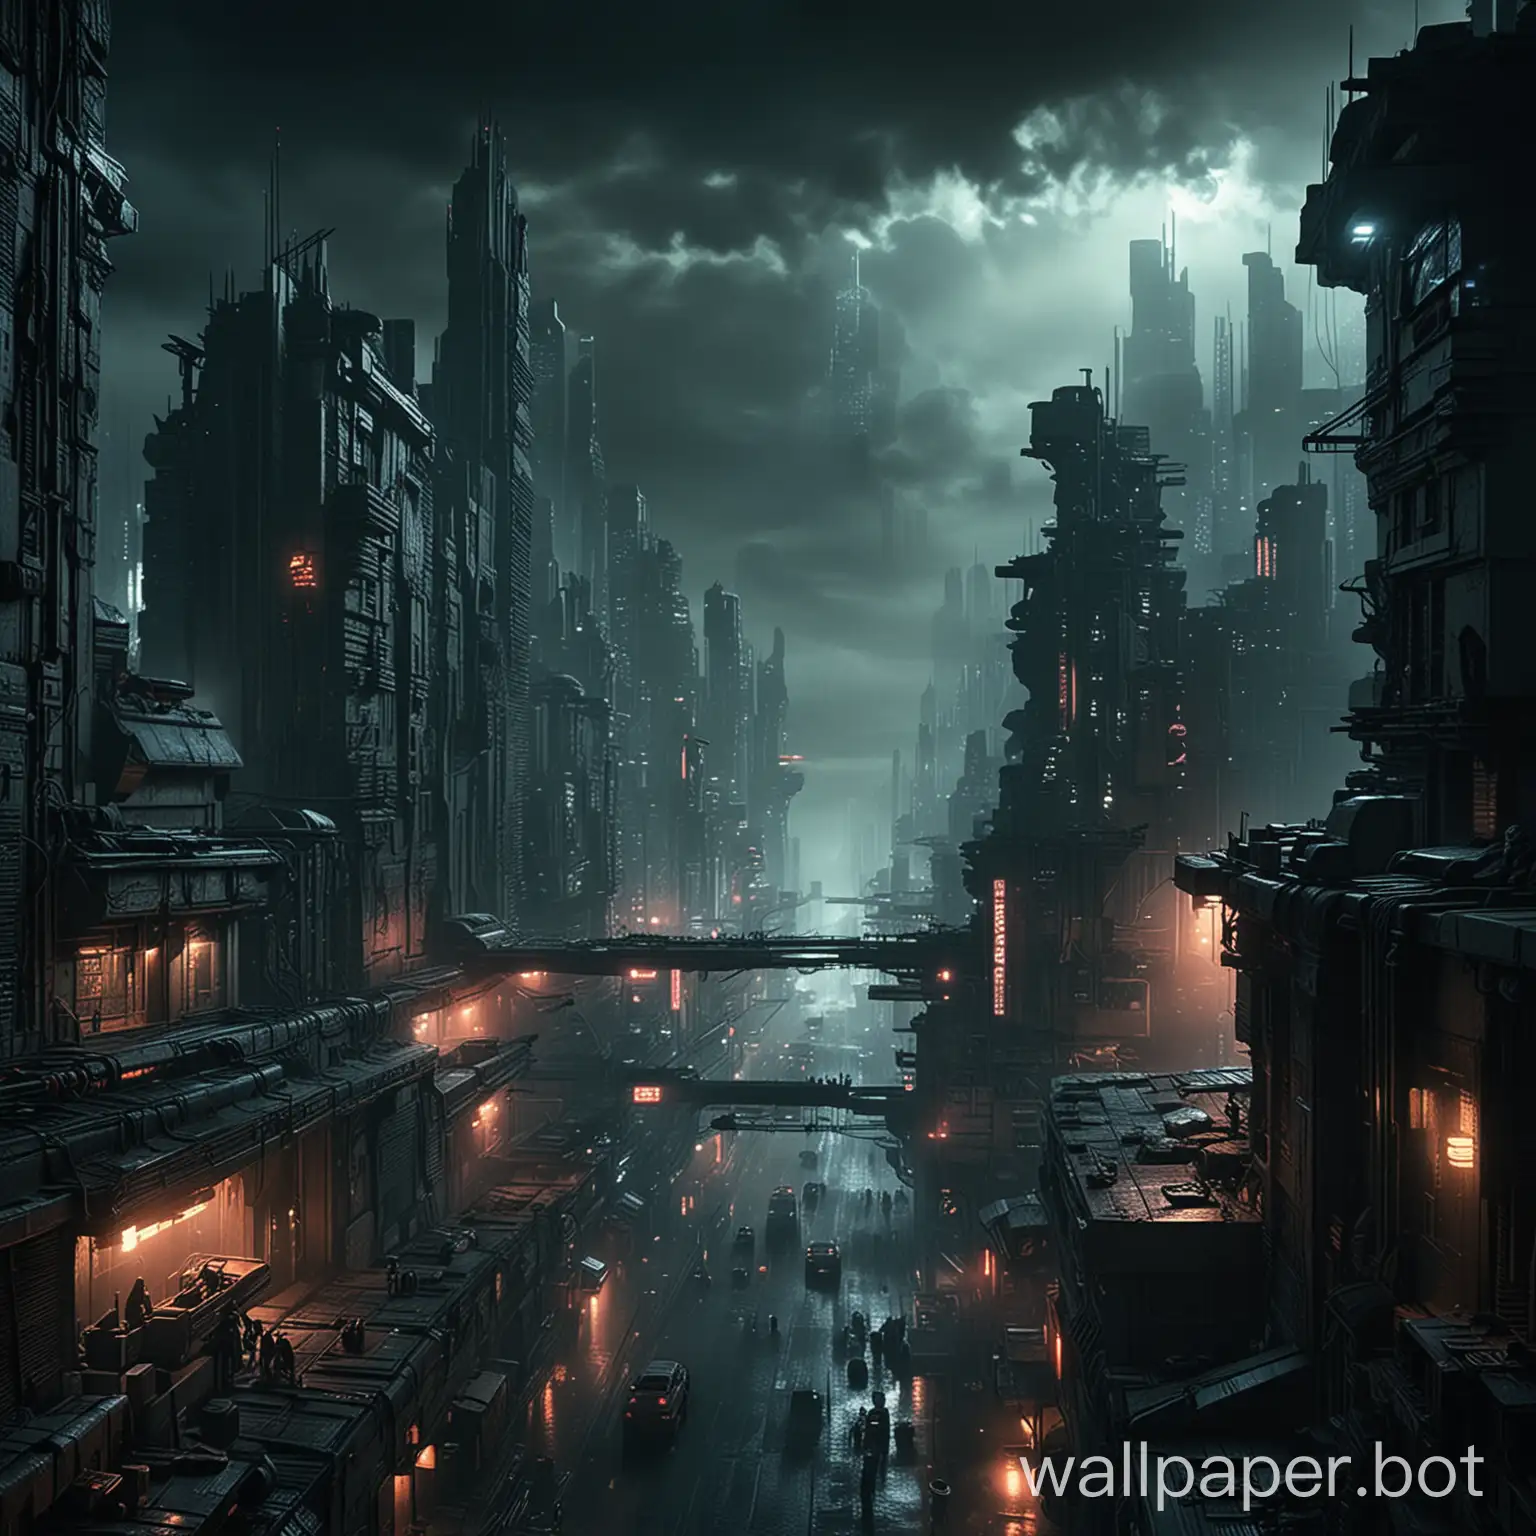 Blade runner futuristic dark sci-fi city landscape